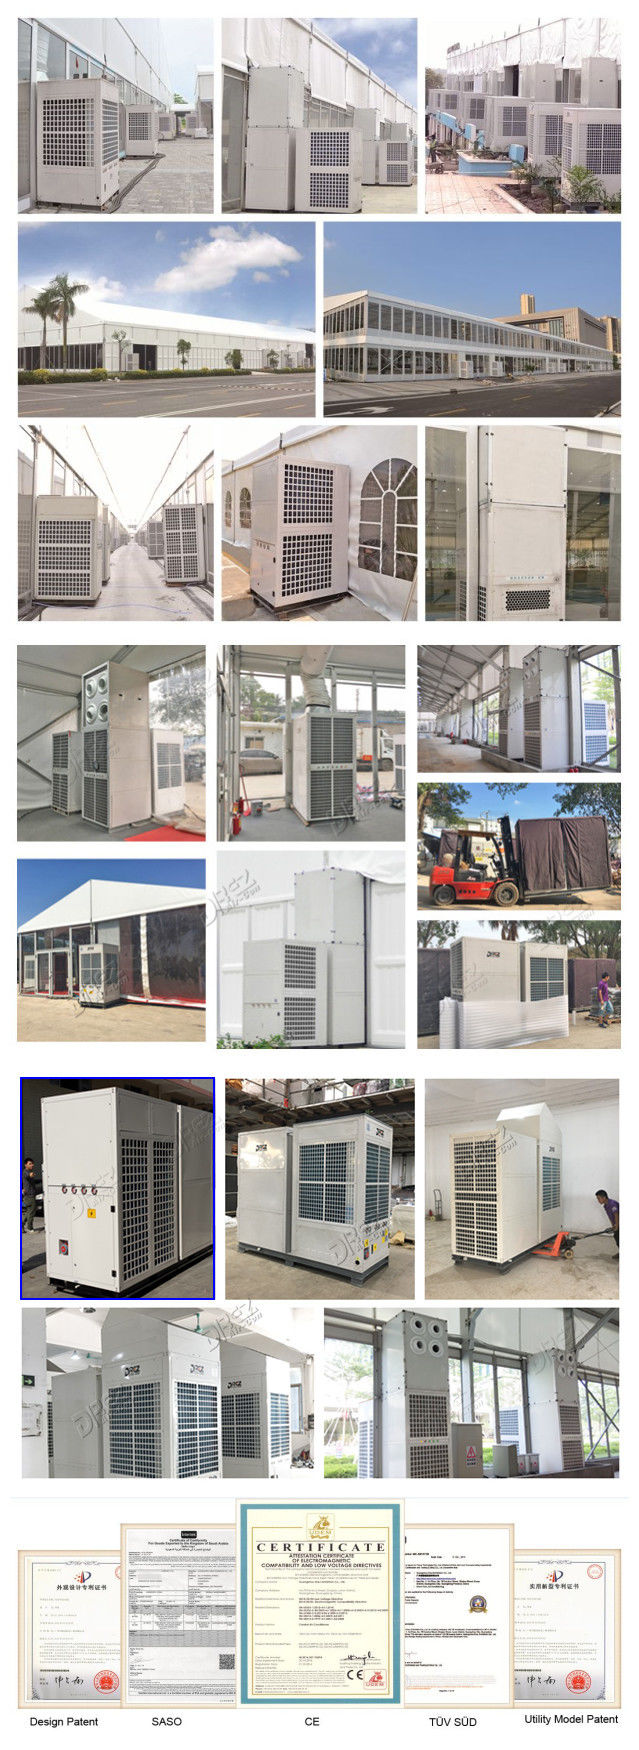 통합 14.5KW 천막 냉각 제품 구획 박람회 냉각 및 가열 사용법